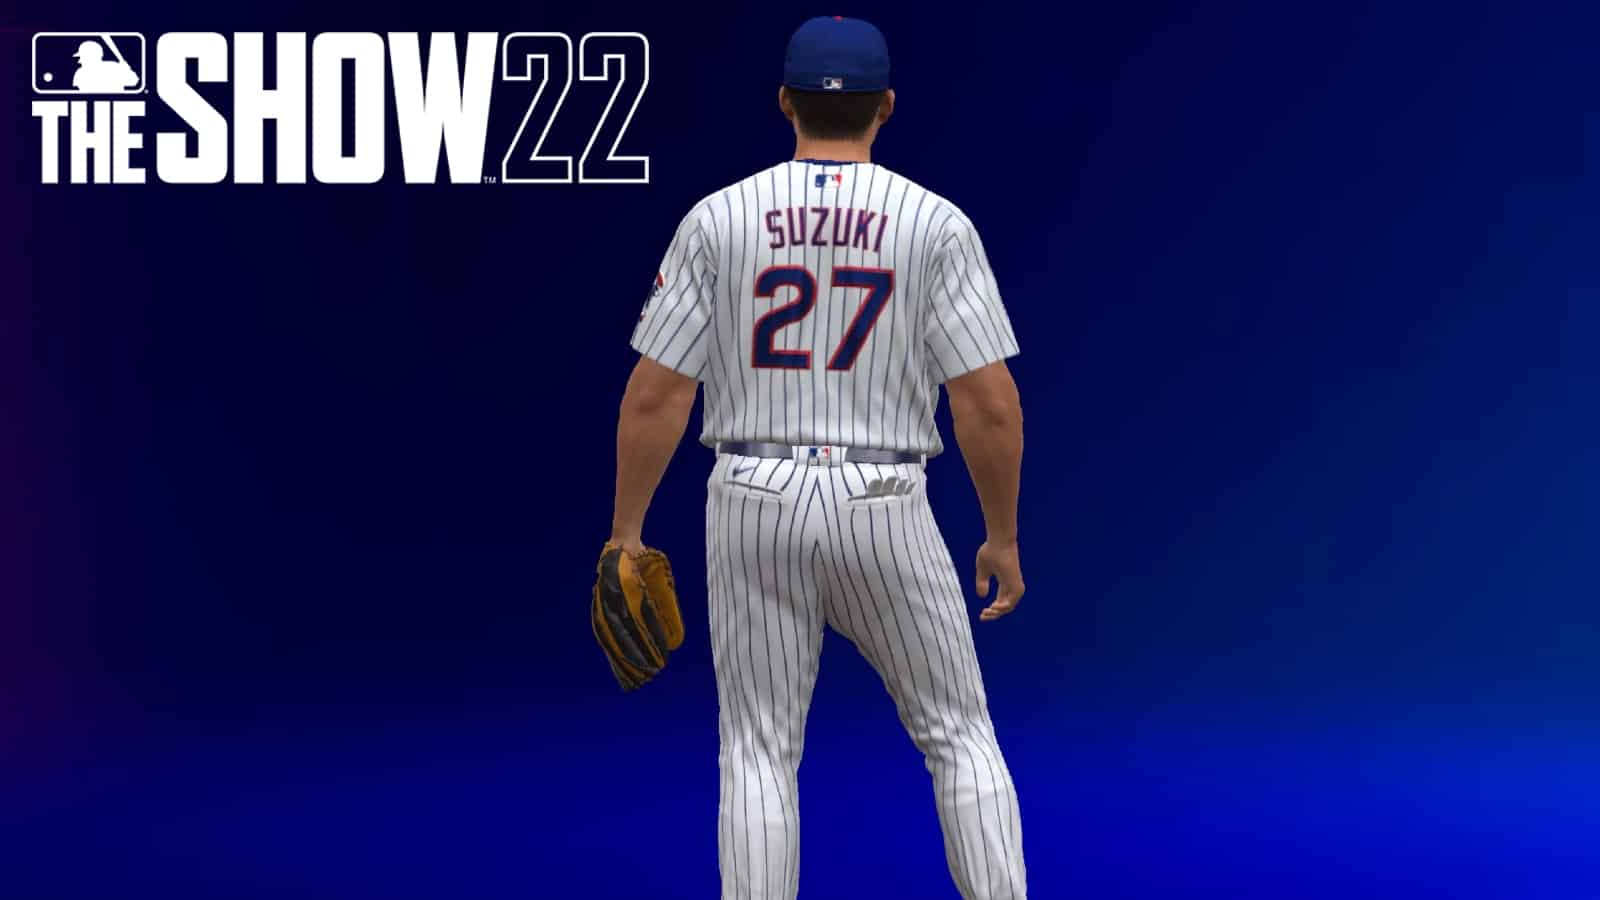 When is Seiya Suzuki being added to MLB The Show 22? - Dexerto